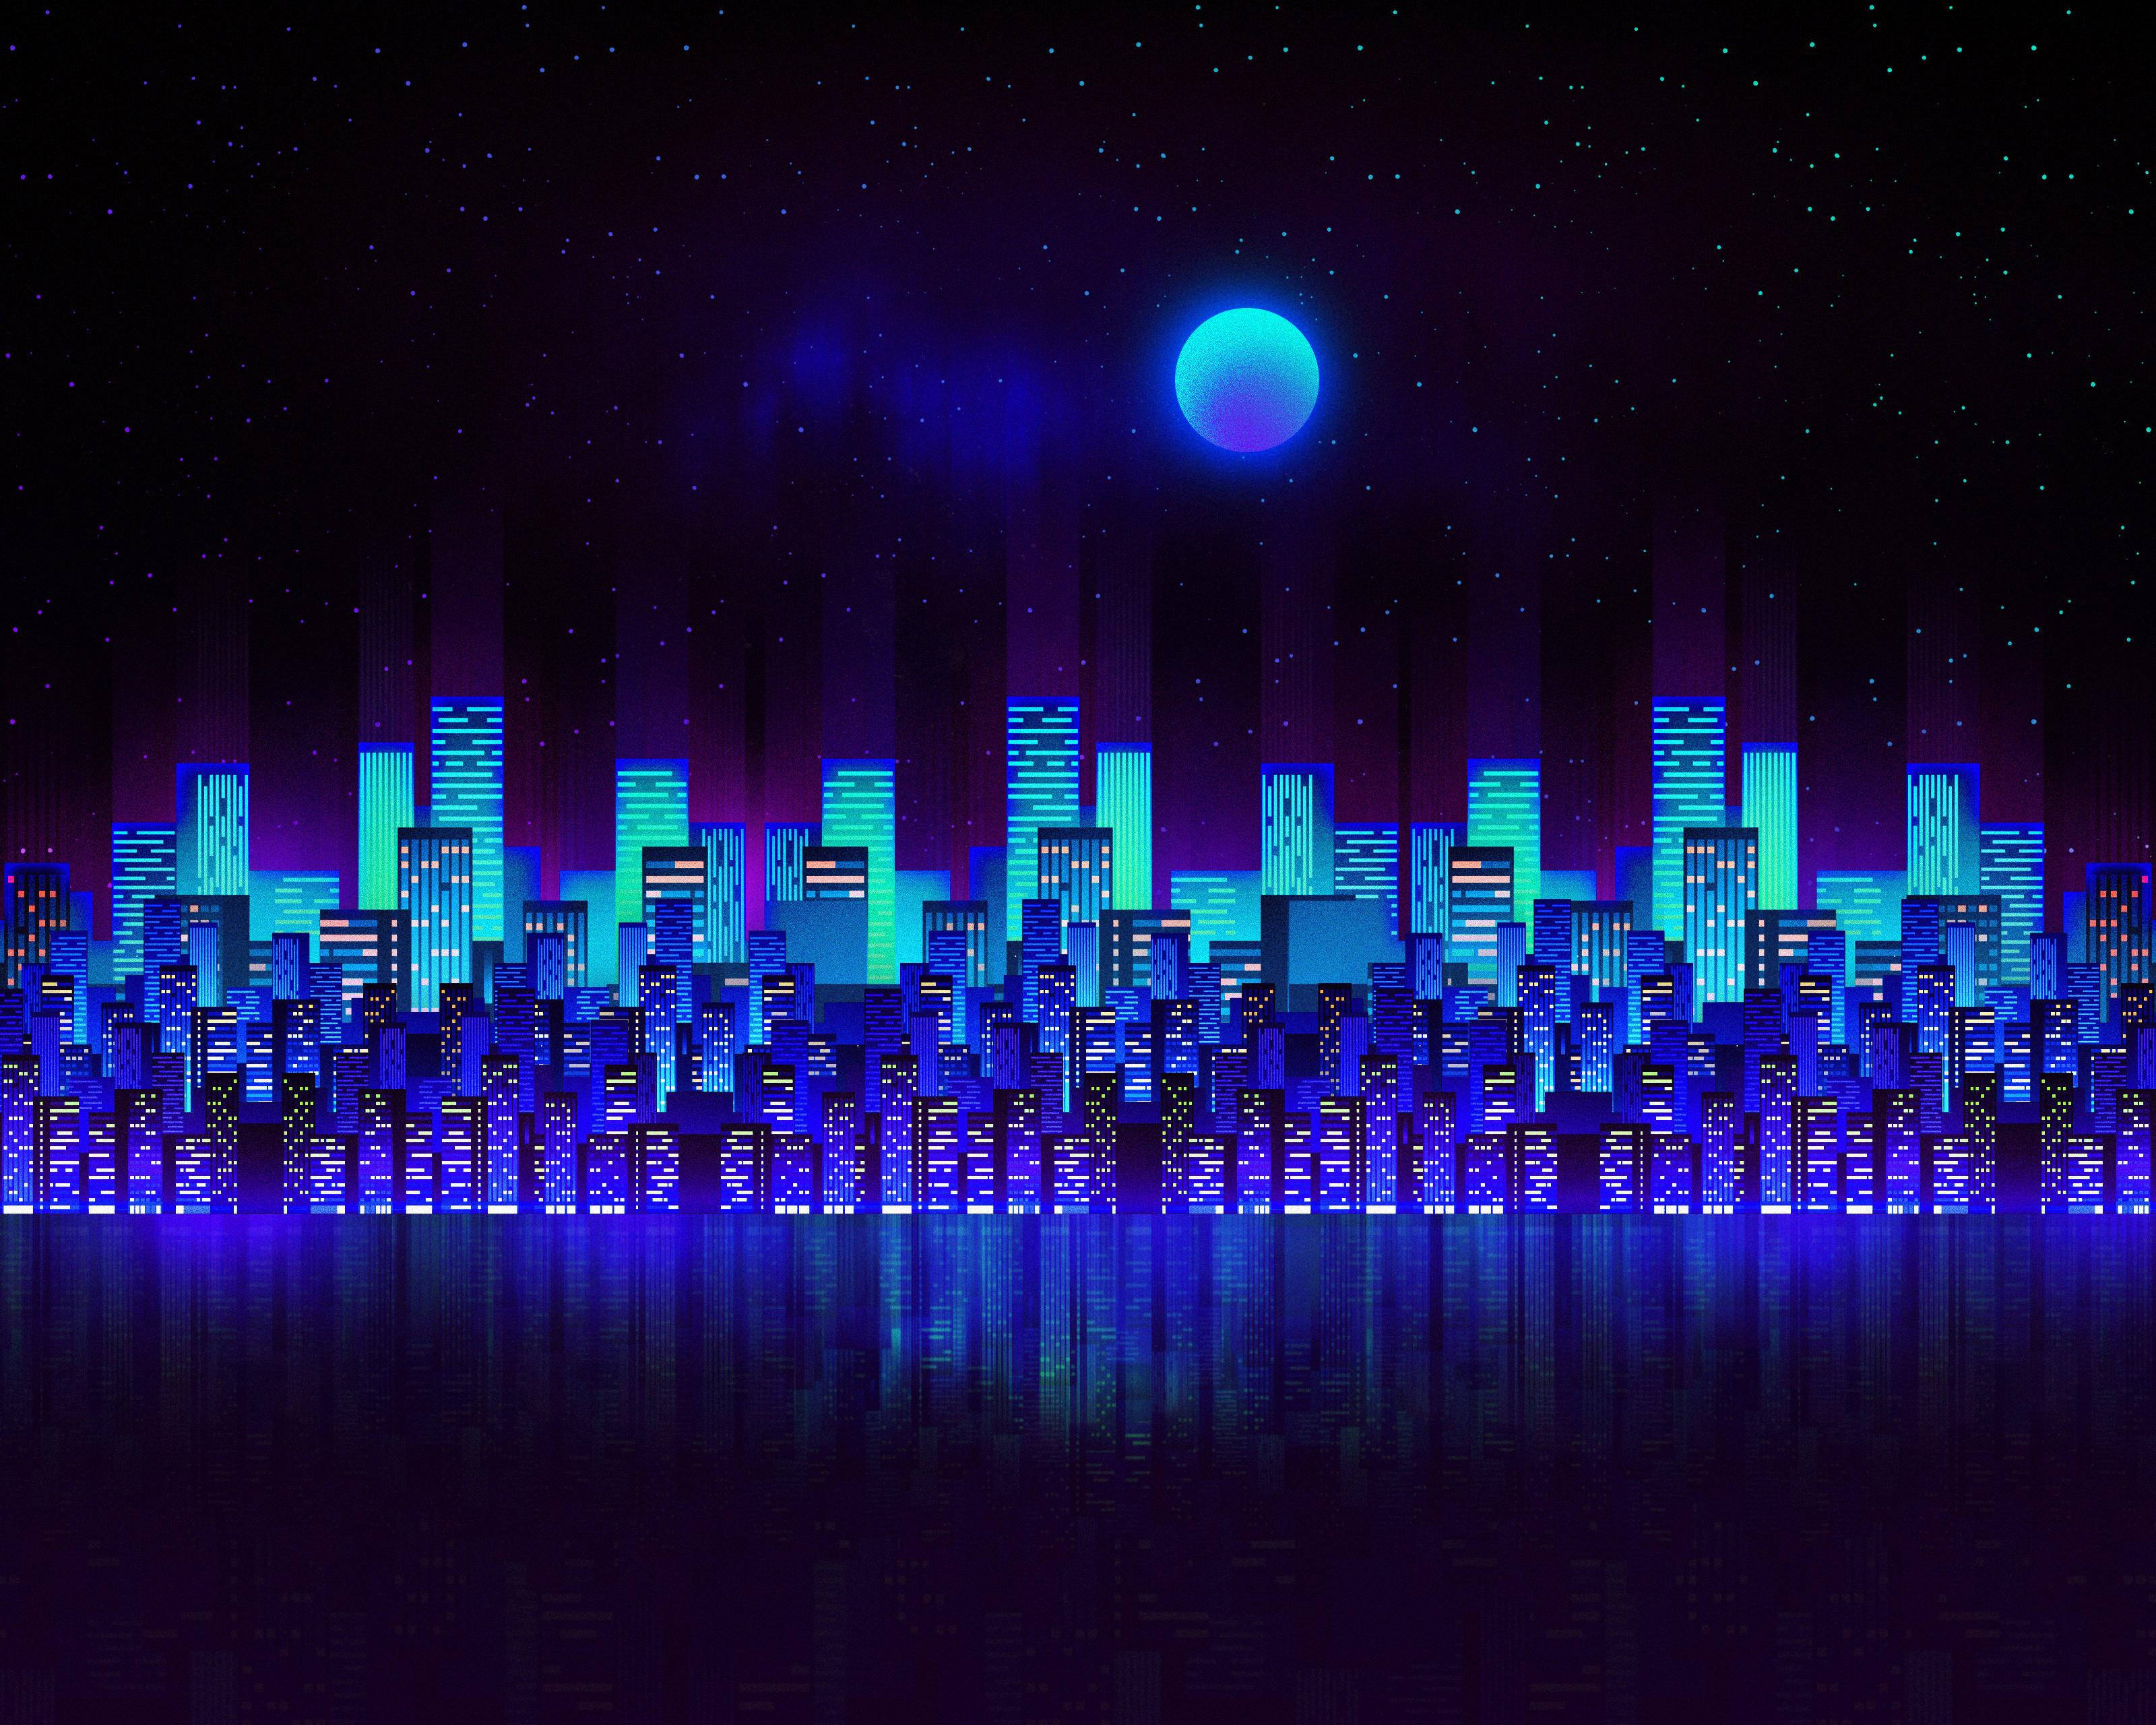 Khám phá thành phố Neon tuyệt đẹp qua màn hình PC với hình nền màu xanh Neon City Aesthetic đầy sáng tạo và bắt mắt. Hãy cùng trải nghiệm những khoảnh khắc đầy phấn khích ngay từ lúc khởi động máy tính.